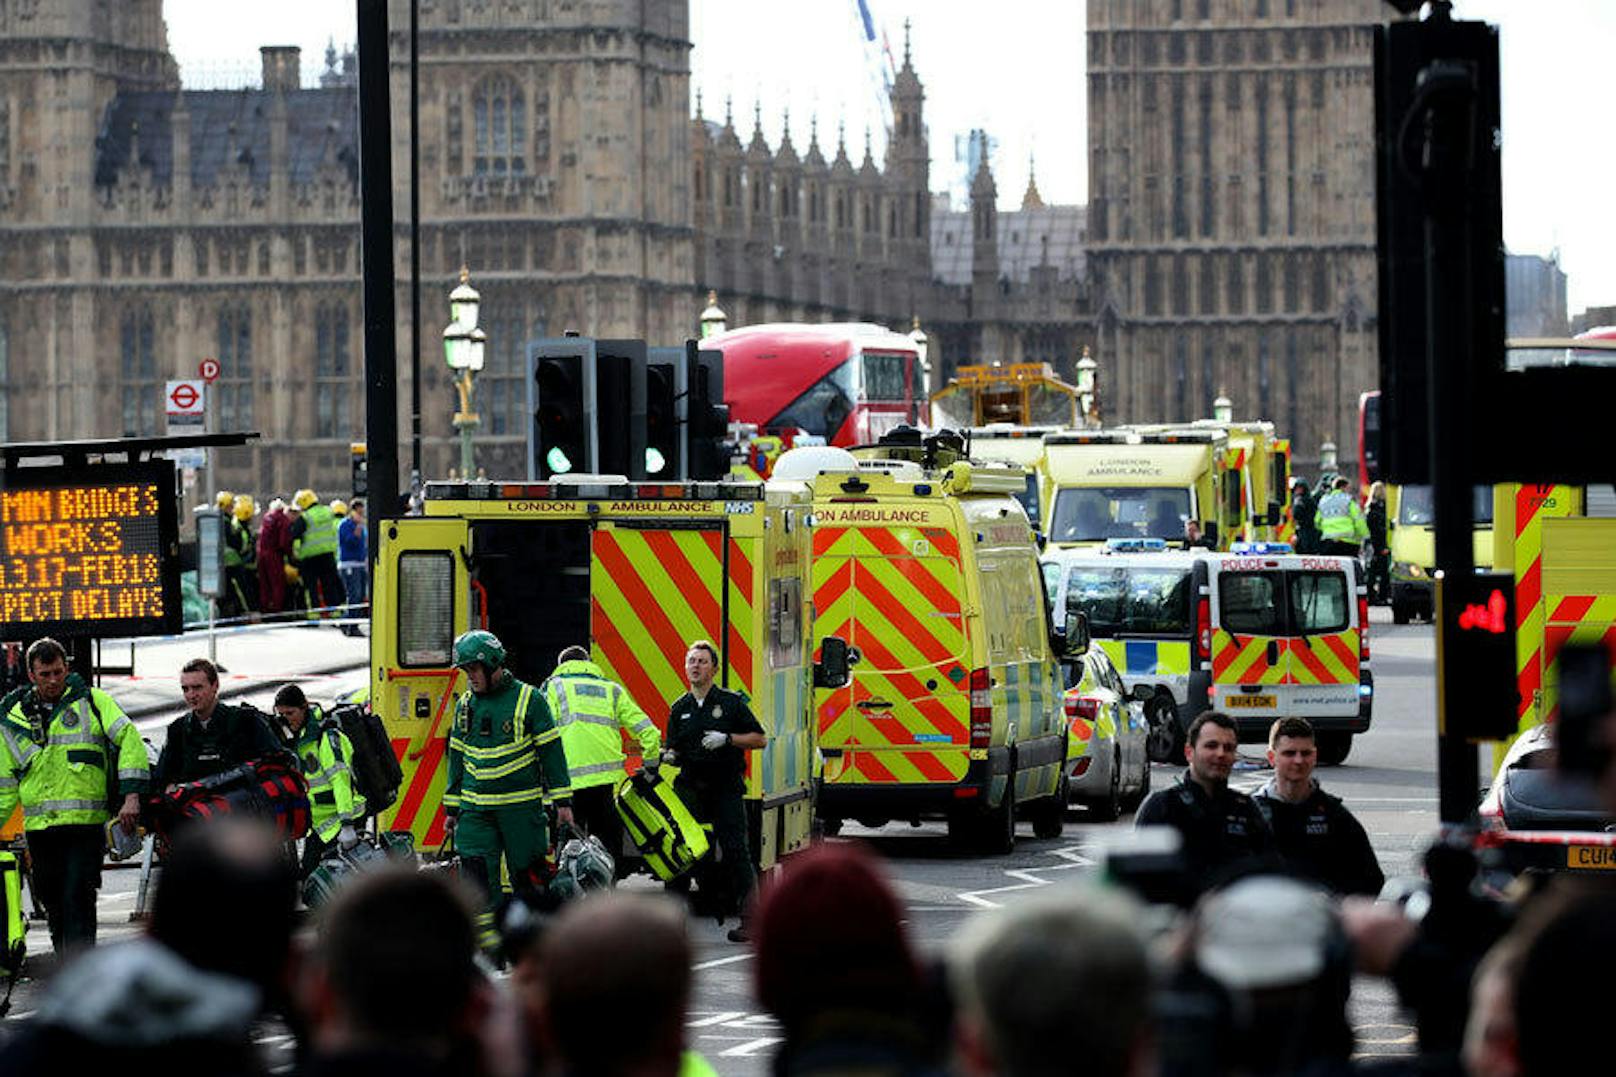 <b>22. März 2017:</b> Bei einem <b>Terroranschlag in London</b> wurden mindestens fünf Menschen getötet und Dutzende verletzt. Gegen 14.40 Uhr Ortszeit hatte der Angreifer, Khalid Masood (52), einen Mietwagen auf den Gehsteig der Westminster Bridge gelenkt und war damit durch die Menschenmenge gerast. Danach versuchte er in das britische Parlament einzudringen, wo er einen Polizisten erstach bevor er von dessen Kollegen niedergeschossen wurde. 

<b>Mehr Infos:</b> <a href="https://www.heute.at/welt/news/story/Schuesse-vor-britischem-Parlament-in-London-30475783" target="_blank">Schüsse vor britischem Parlament in London</a>